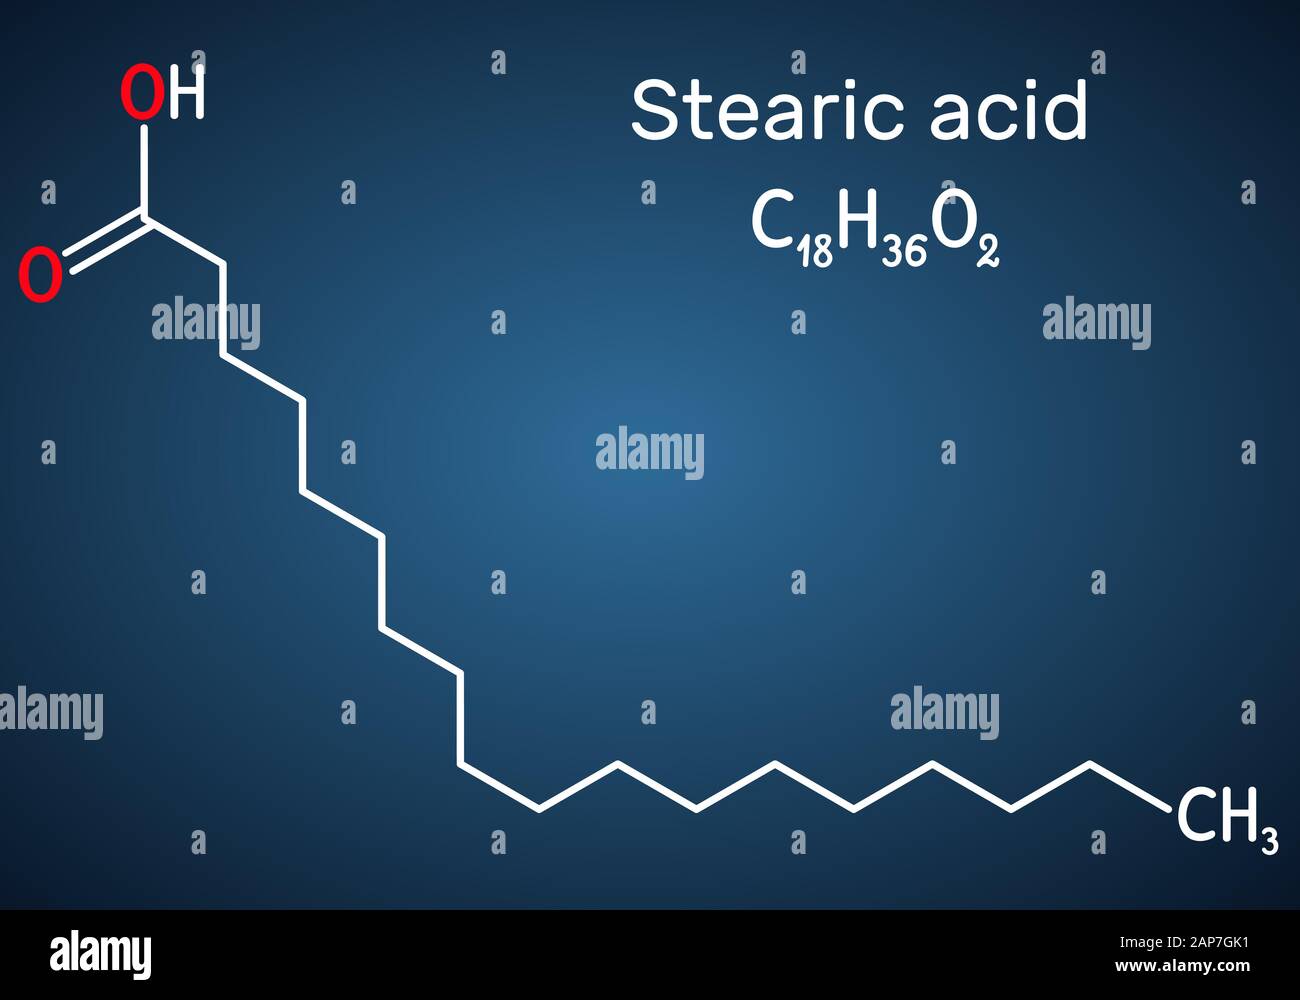 Acido stearico, ottadecanoico, saturo molecola di acido grasso. Formula chimica di struttura su sfondo blu scuro. Illustrazione Vettoriale Illustrazione Vettoriale